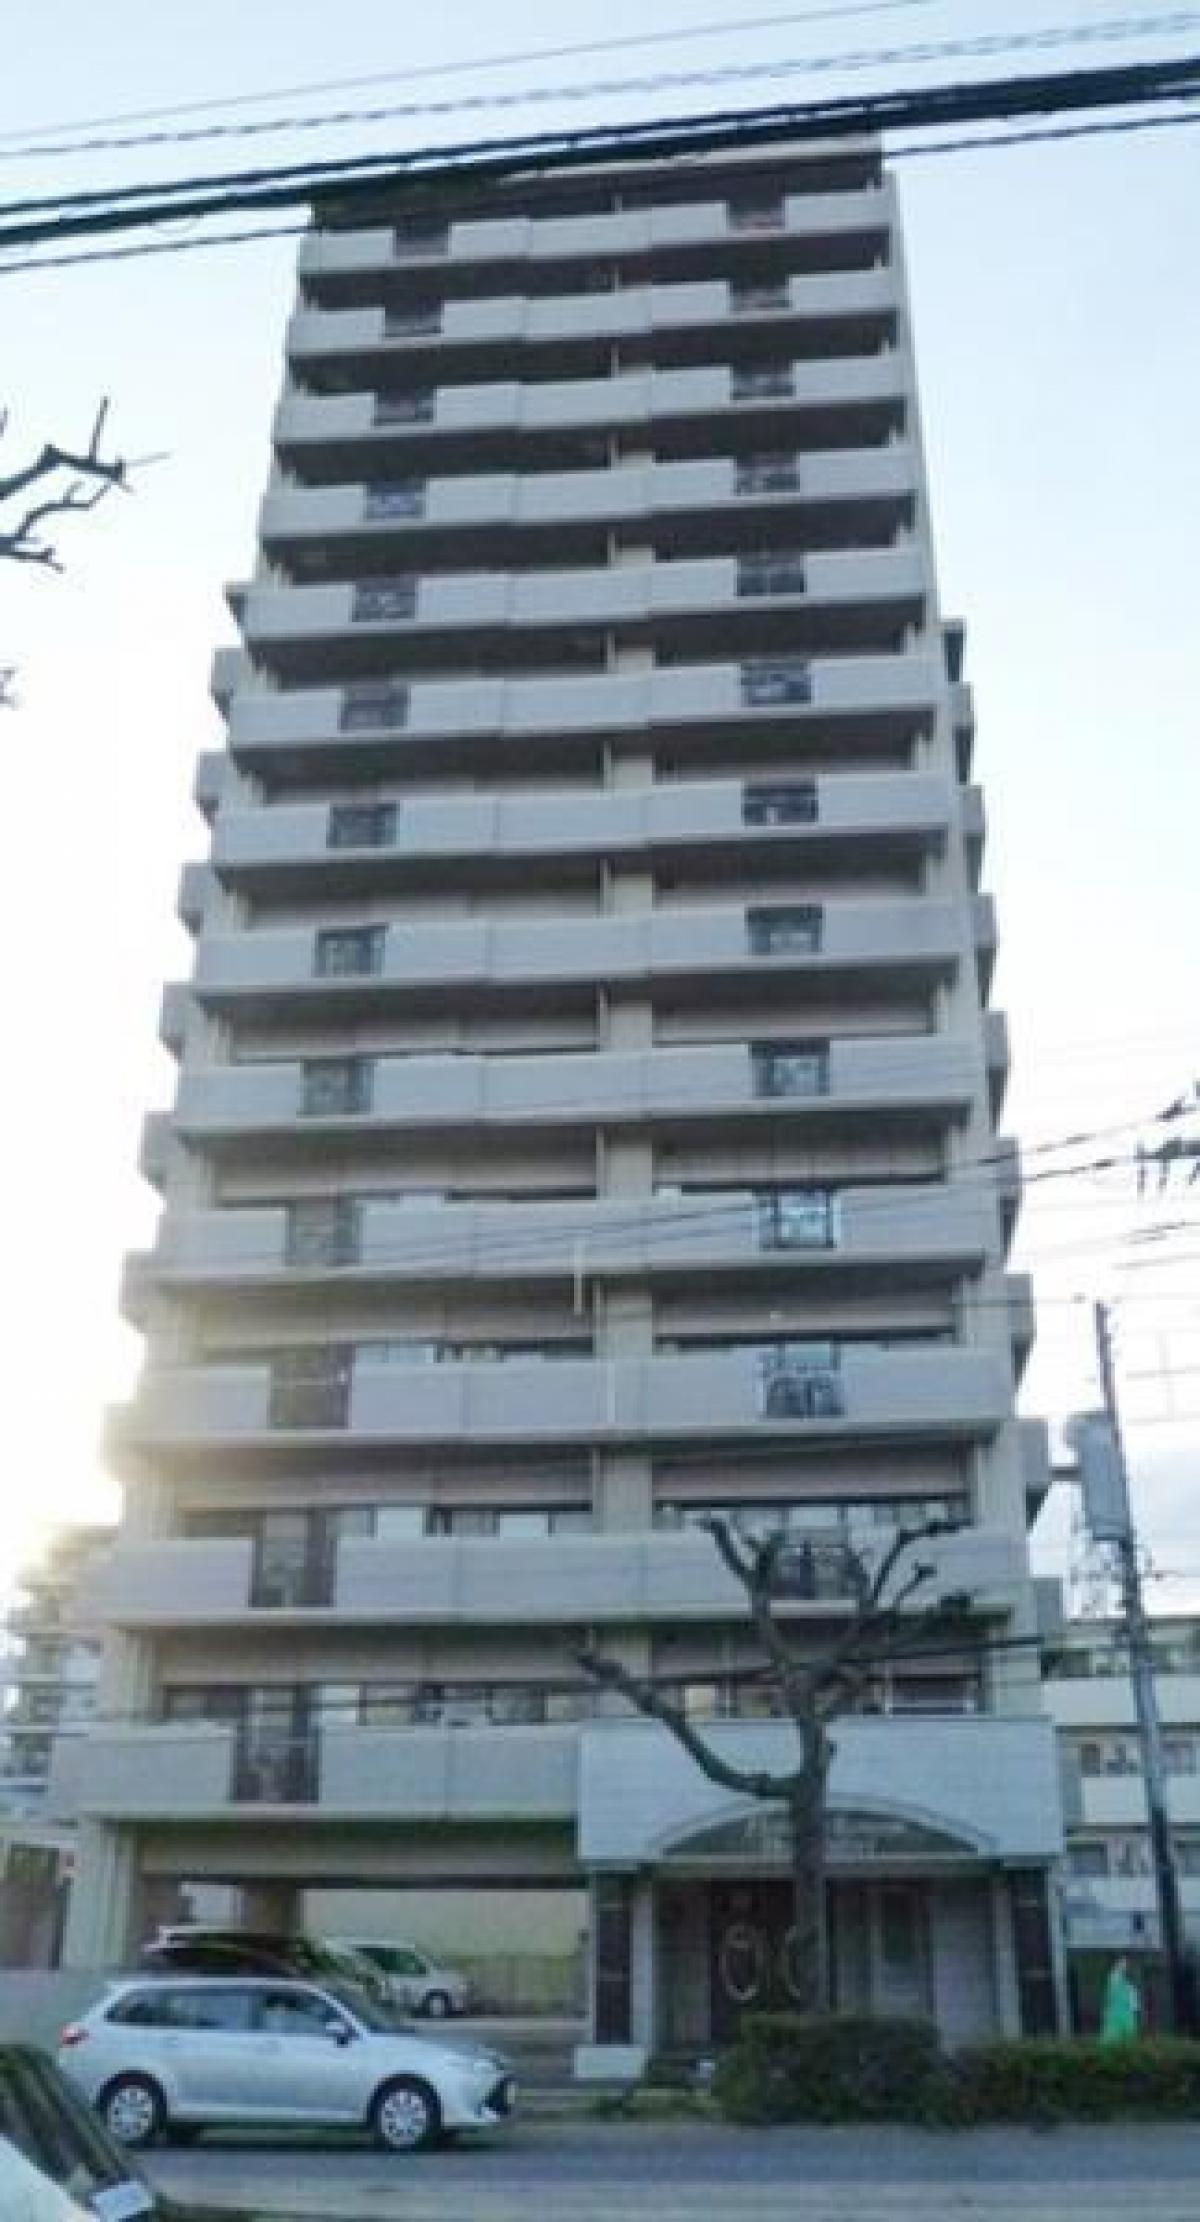 Picture of Apartment For Sale in Hiroshima Shi Nishi Ku, Hiroshima, Japan